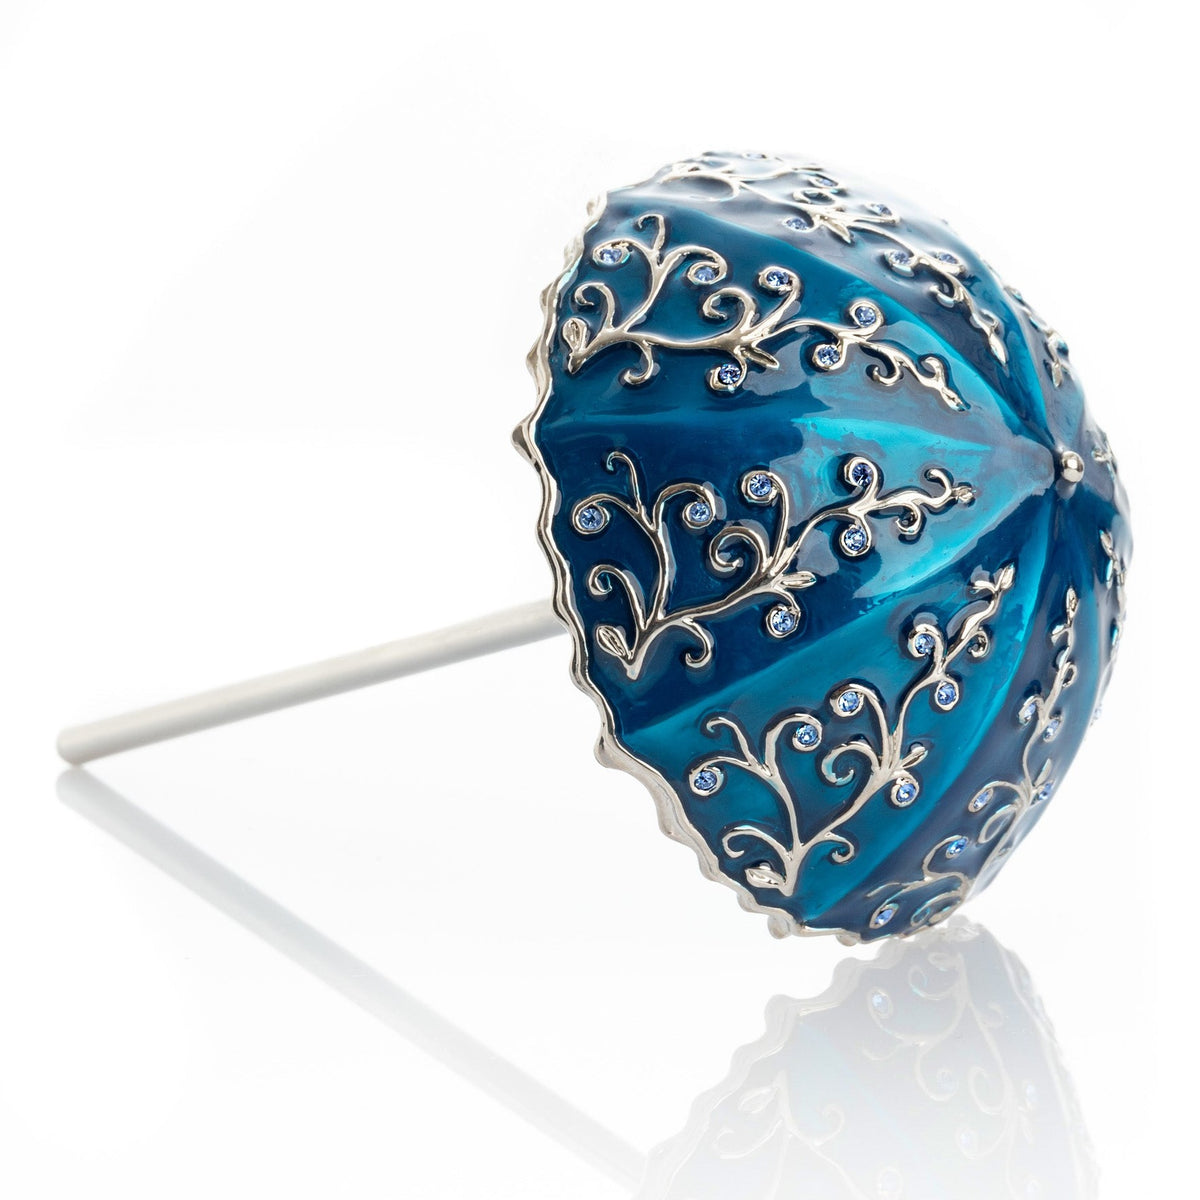 Boîte à bijoux parapluie bleu faite à la main avec des cristaux Swarovski